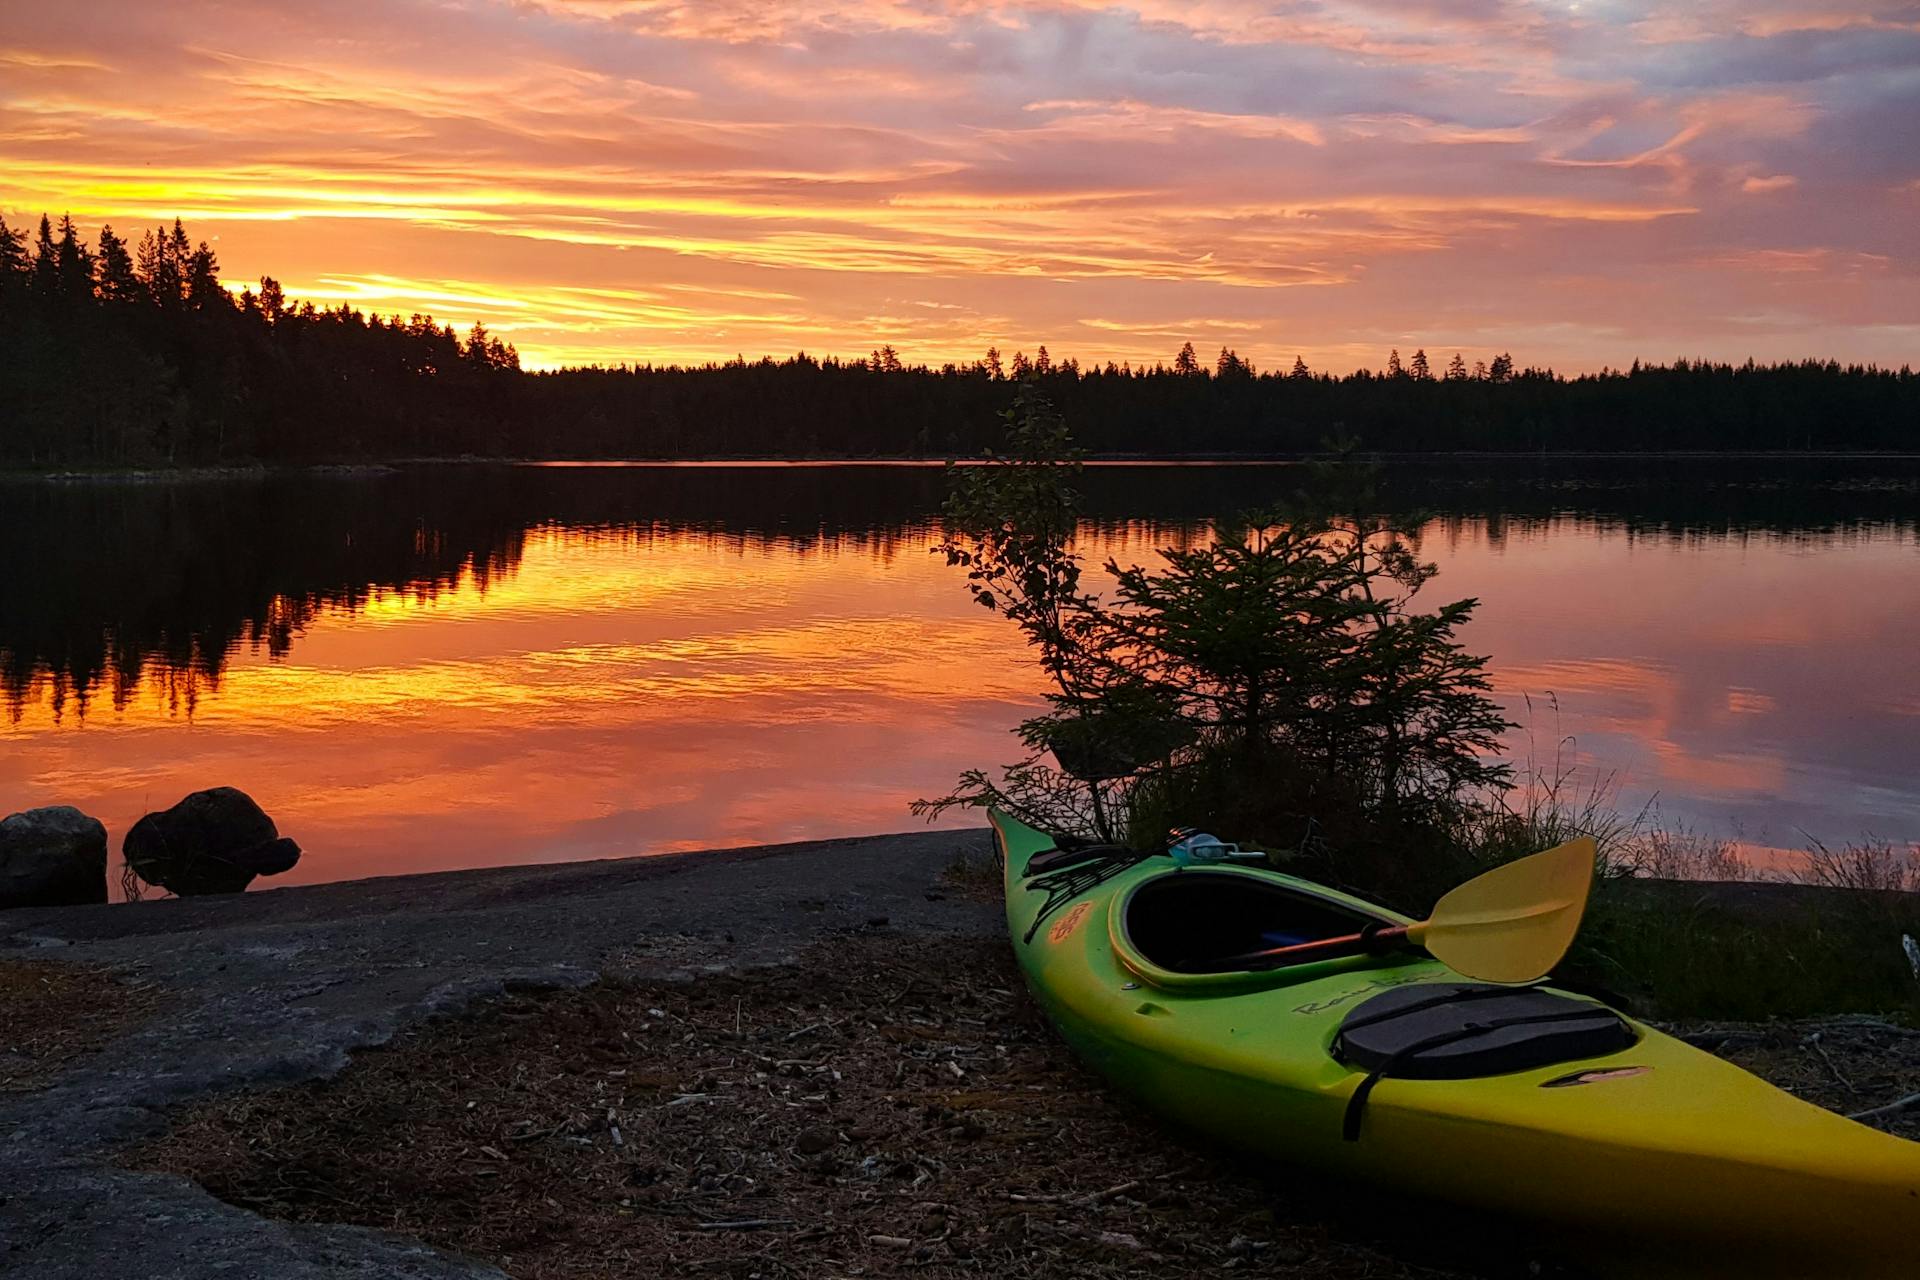 Le kayak repose sur la rive d'un lac pendant un magnifique coucher de soleil dans la réserve naturelle de Malingsbo-Kloten en Suède.